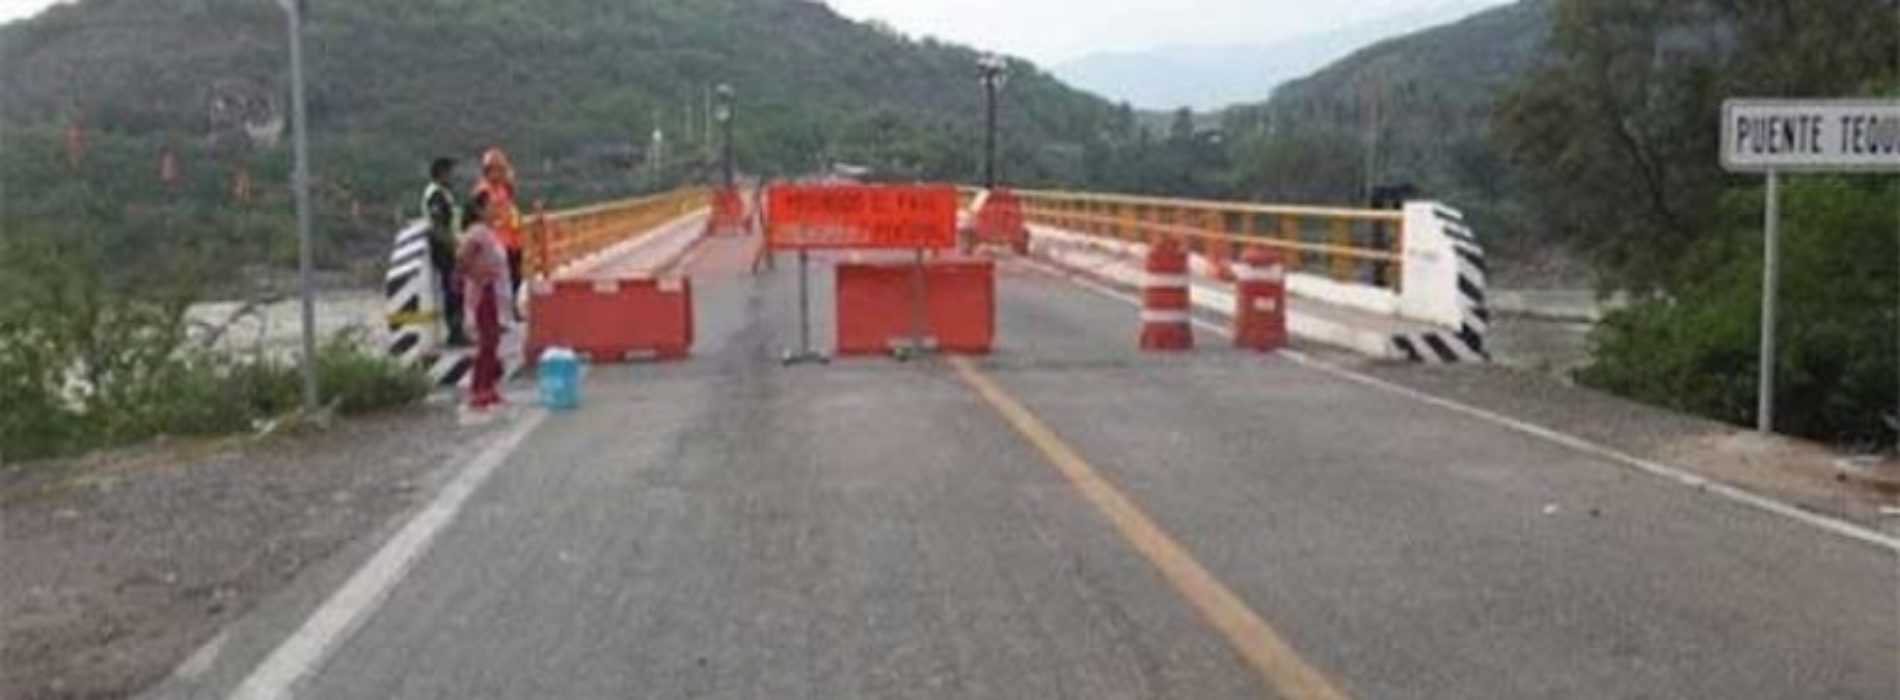 Cierran provisionalmente paso vehicular en puente de Tequisistlán.